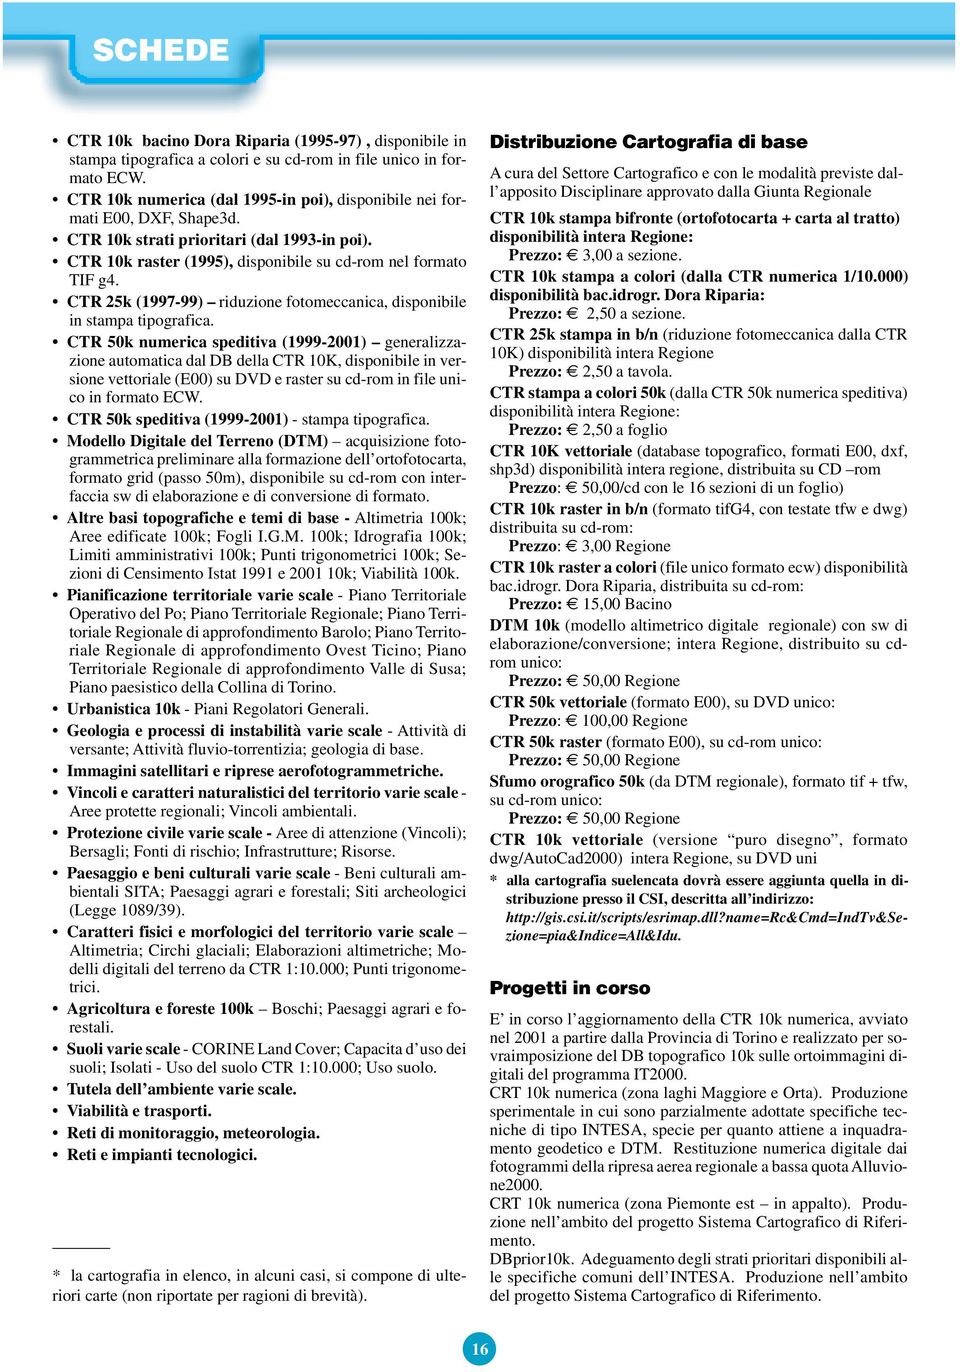 CTR 25k (1997-99) riduzione fotomeccanica, disponibile in stampa tipografica.